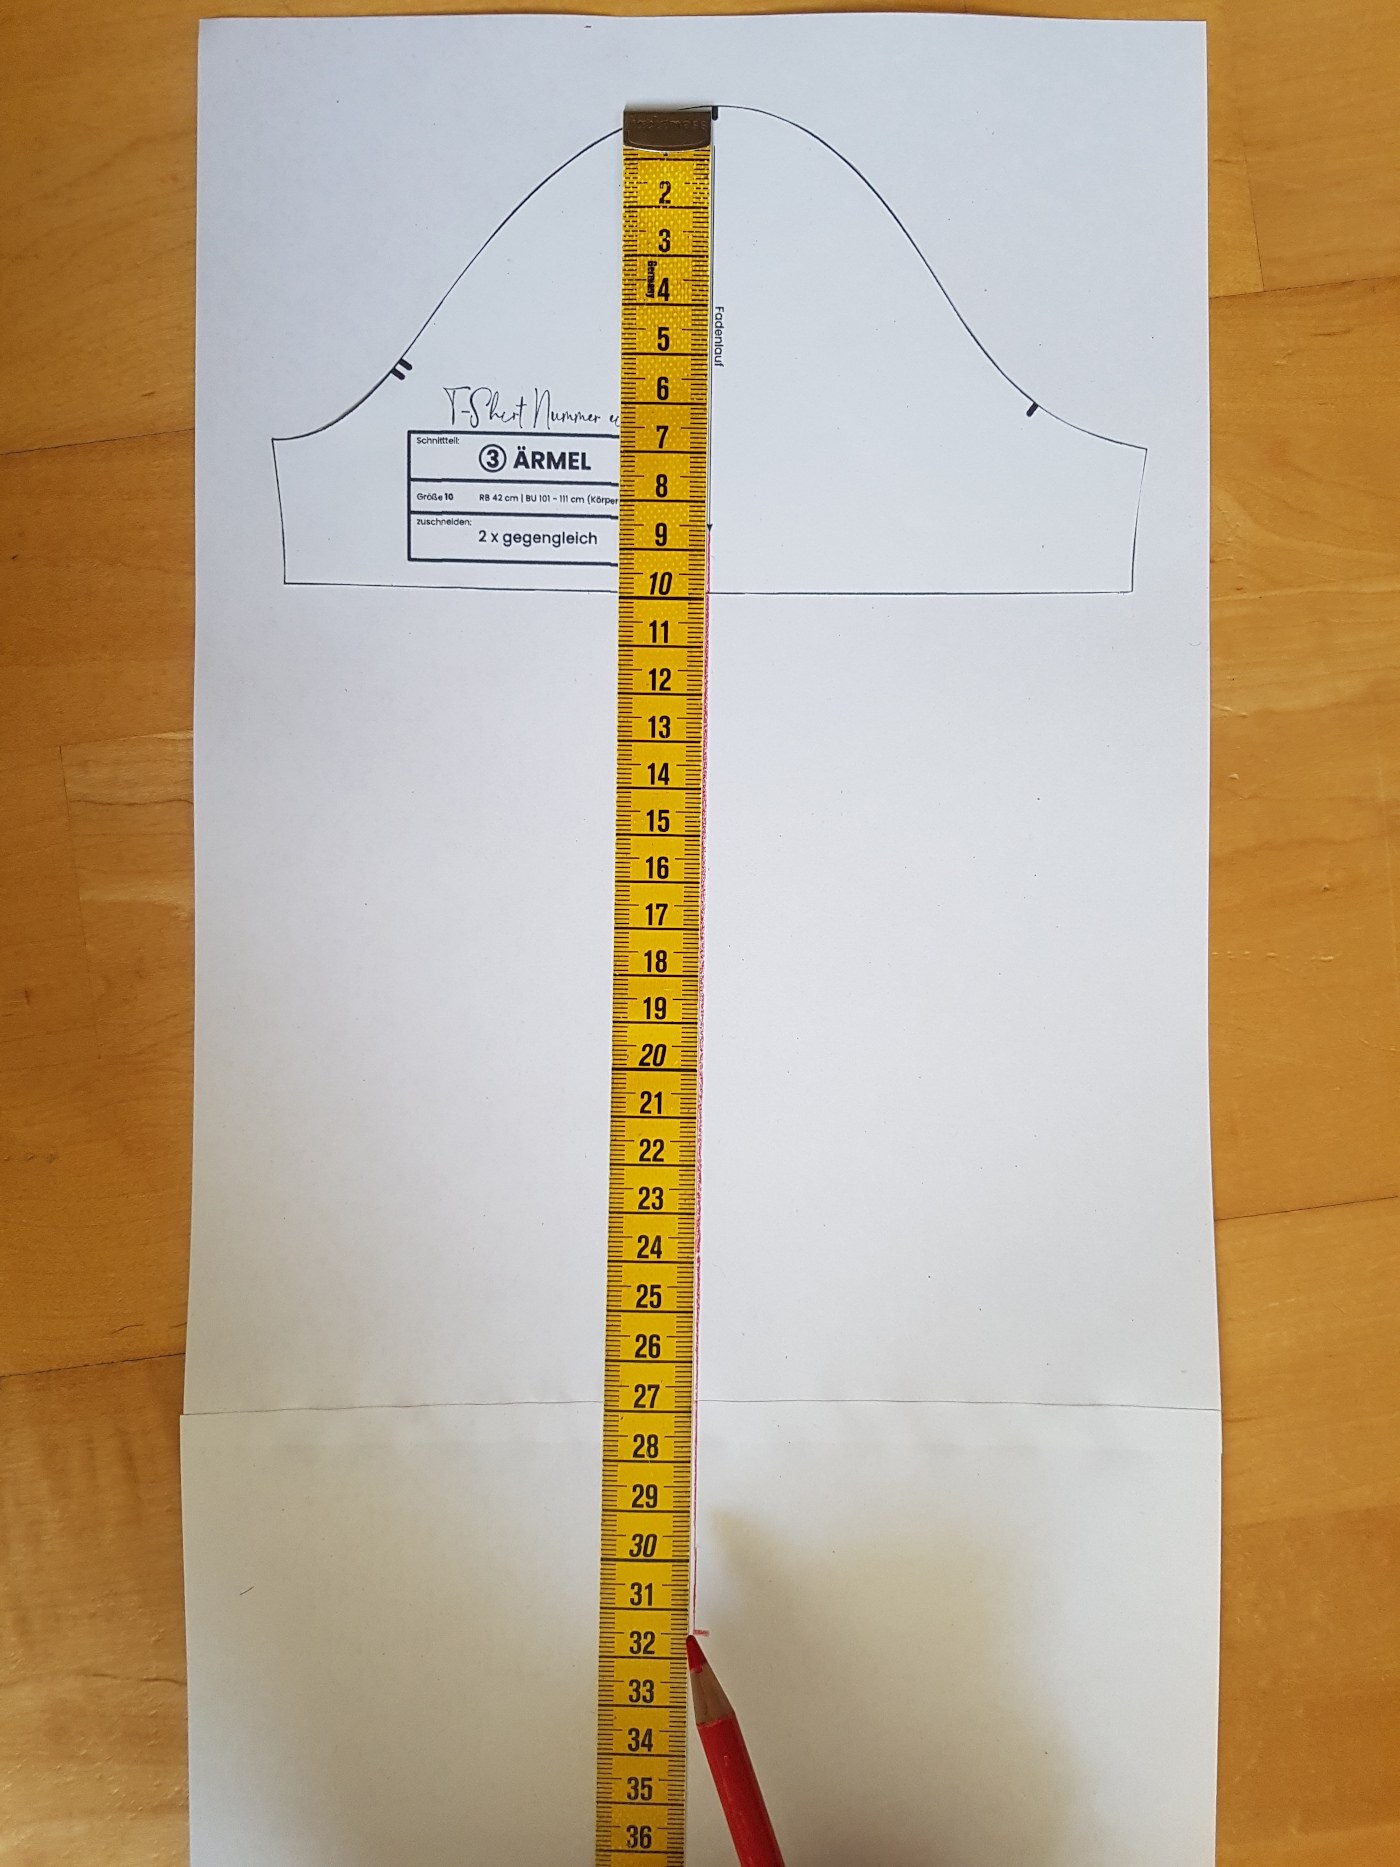 Der Ärmelschnitt liegt auf einem größeren Papier. Ein Maßband zeigt an, wo die Mittellinie verlängert und die Ärmellänge abgetragen wird. Das abgebildete Schnittmuster hat einen Maßstab von 2:1